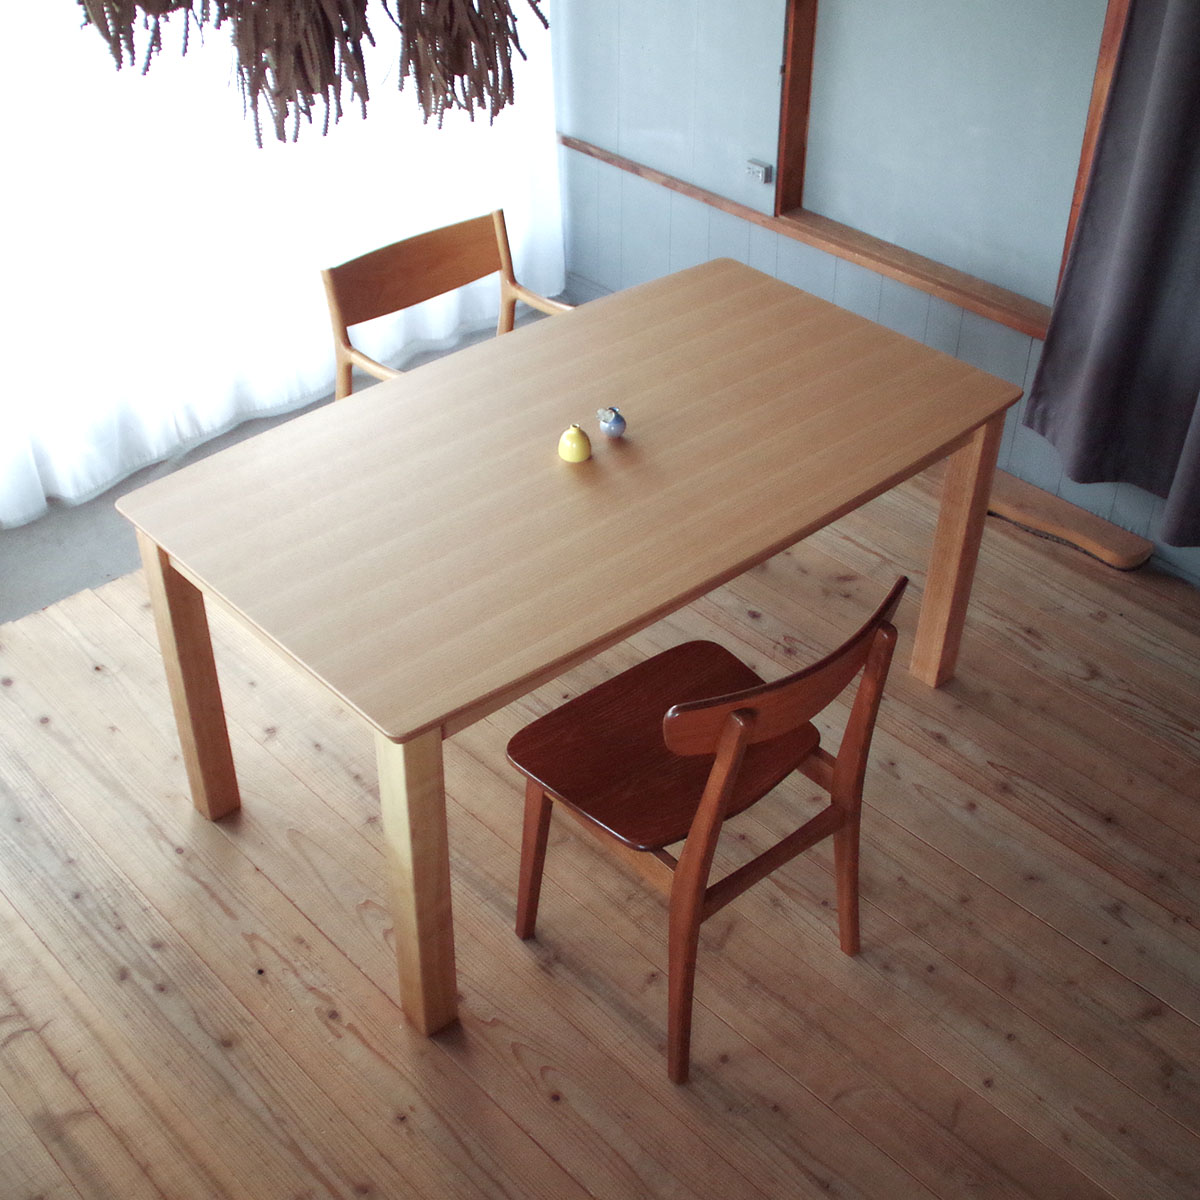 ！別注可（脚カット）！DK-randyハイタイプ こたつ テーブル 135 長方形（曲線） ナラ突板|北欧|和風|モダン|シンプル|デザイン||おしゃれ|かわいい||日本製|国産||ダイニングテーブル|デスク|机|高暖卓|